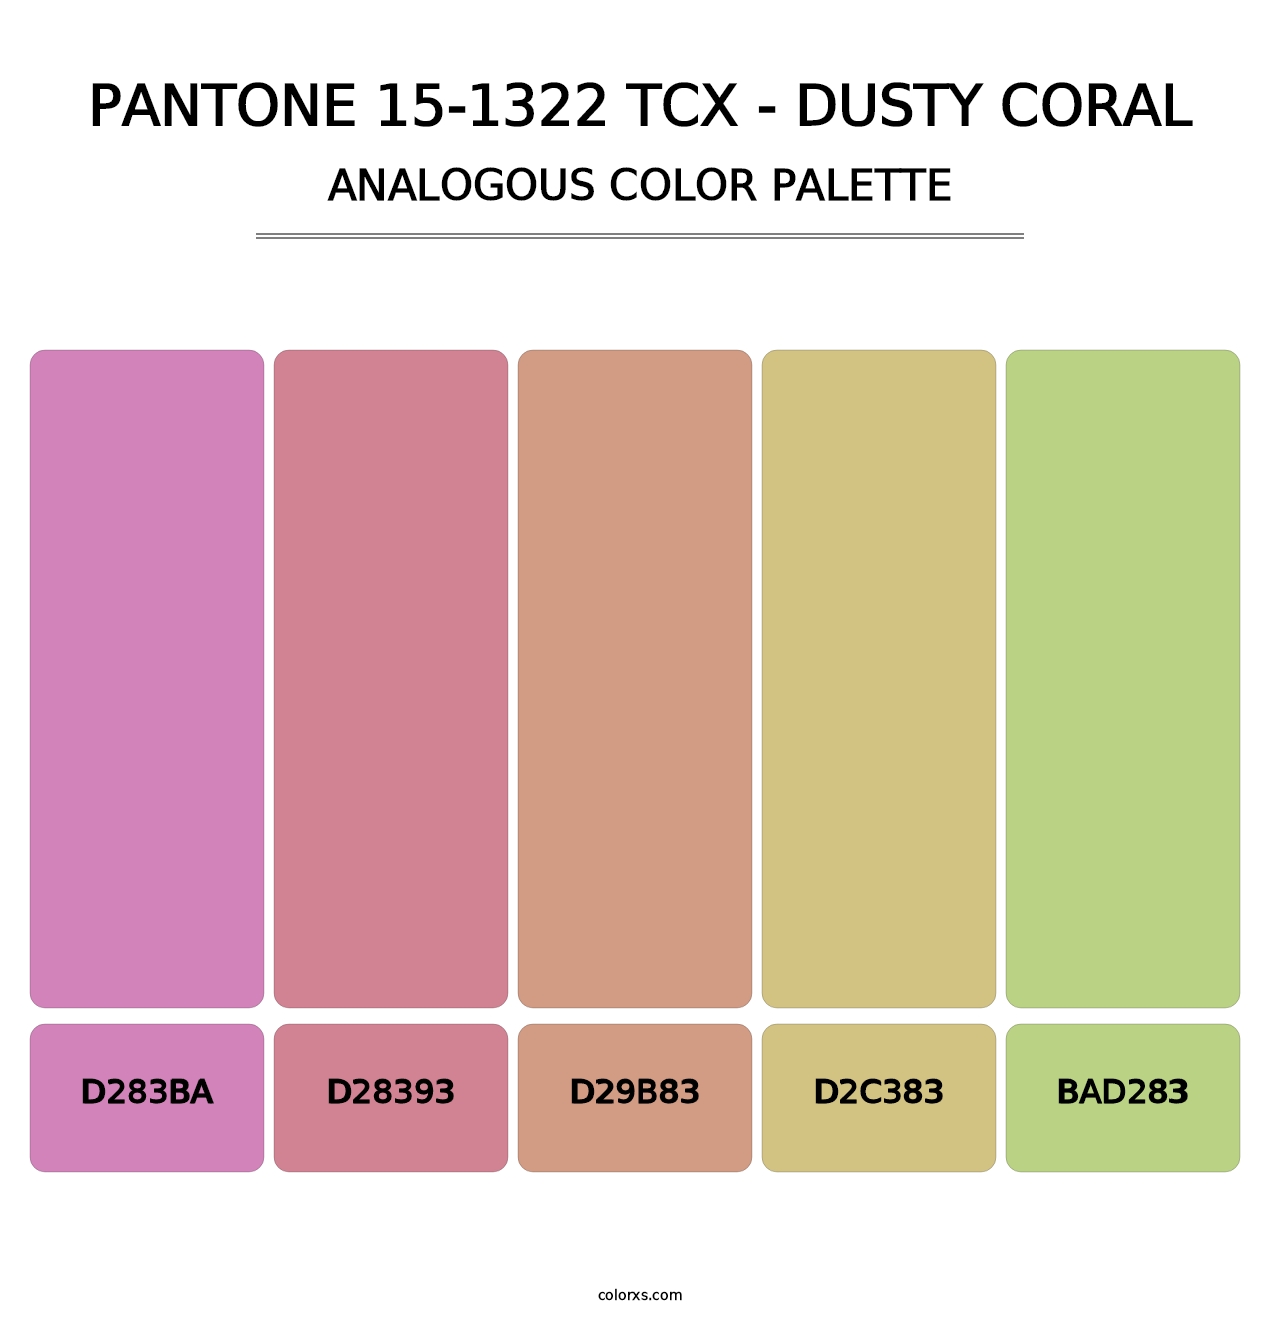 PANTONE 15-1322 TCX - Dusty Coral - Analogous Color Palette